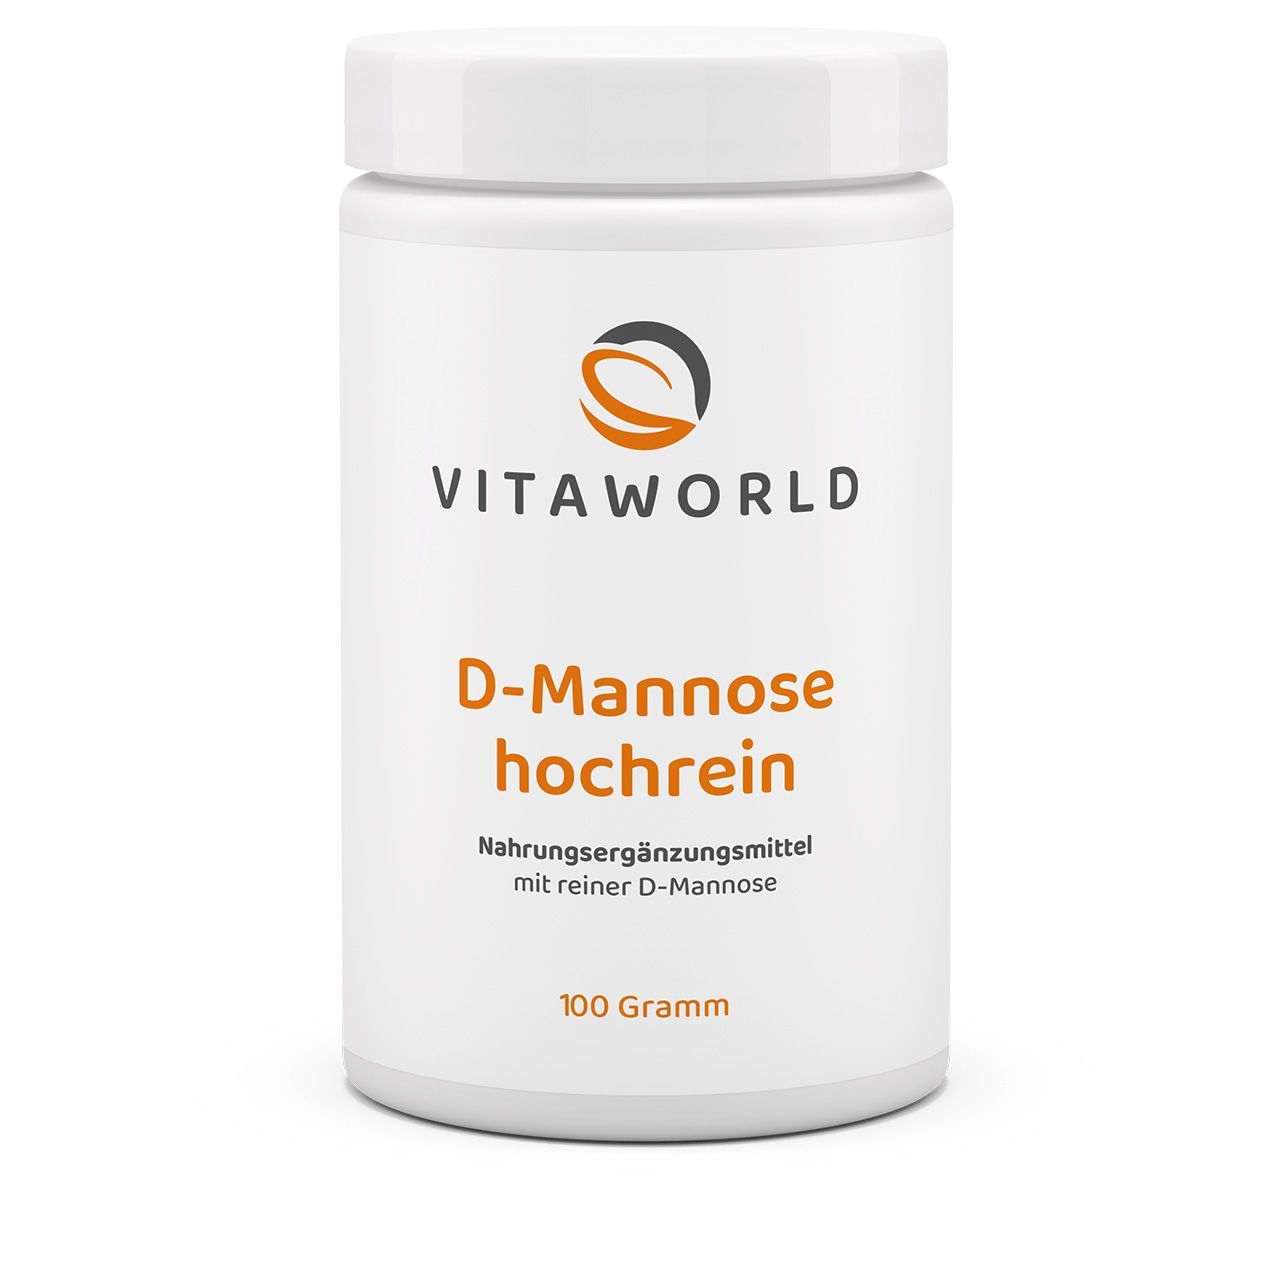 Vitaworld D-Mannose hochrein | 100g | vegan | gluten- und laktosefrei